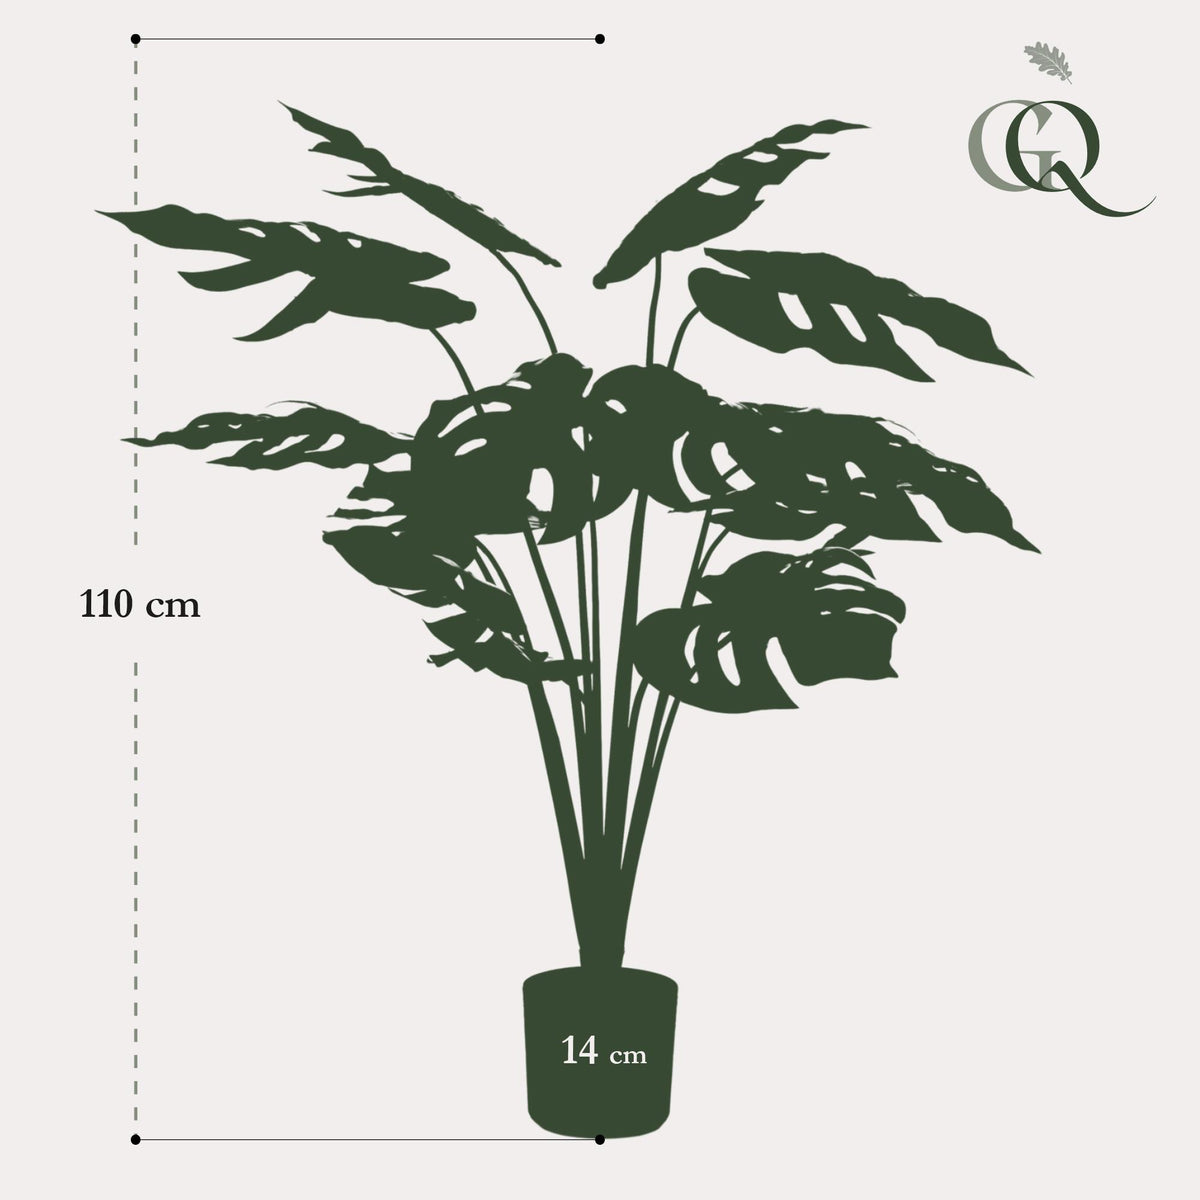 Monstera Deliciosa - Löcherpflanze - 110 cm - kunstpflanze